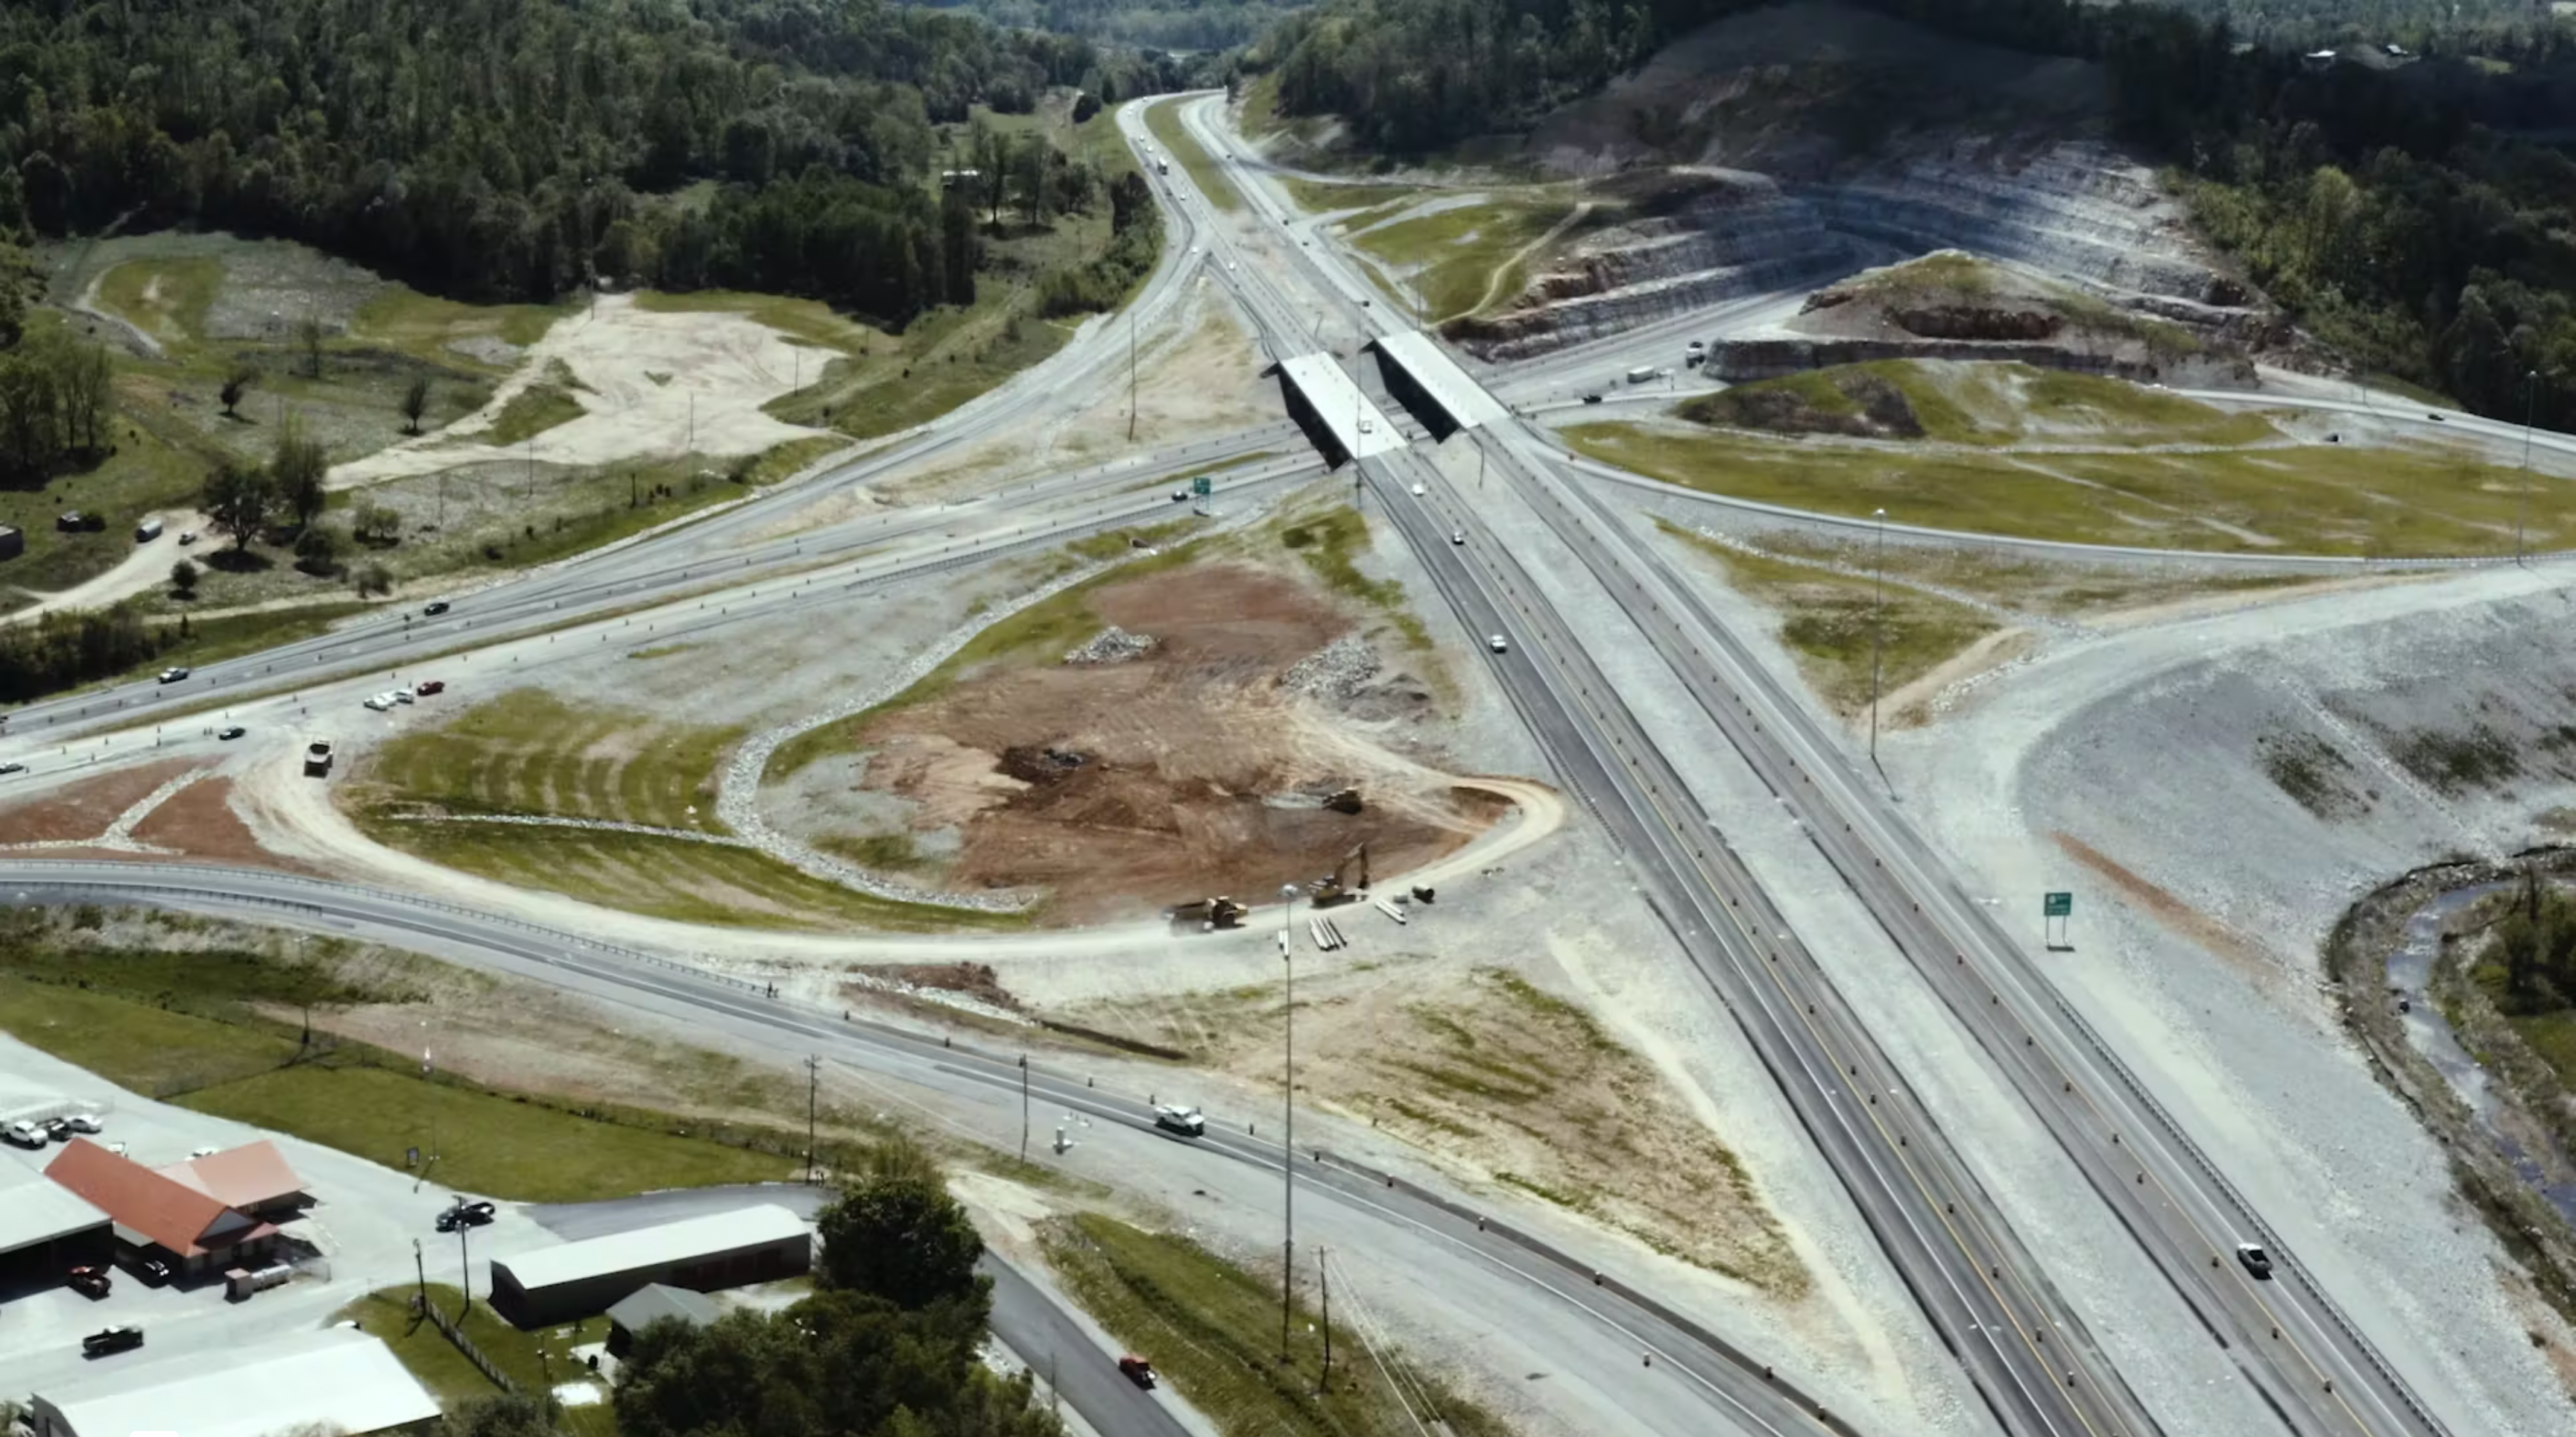 Overhead view of road construction of cloverleaf interchange